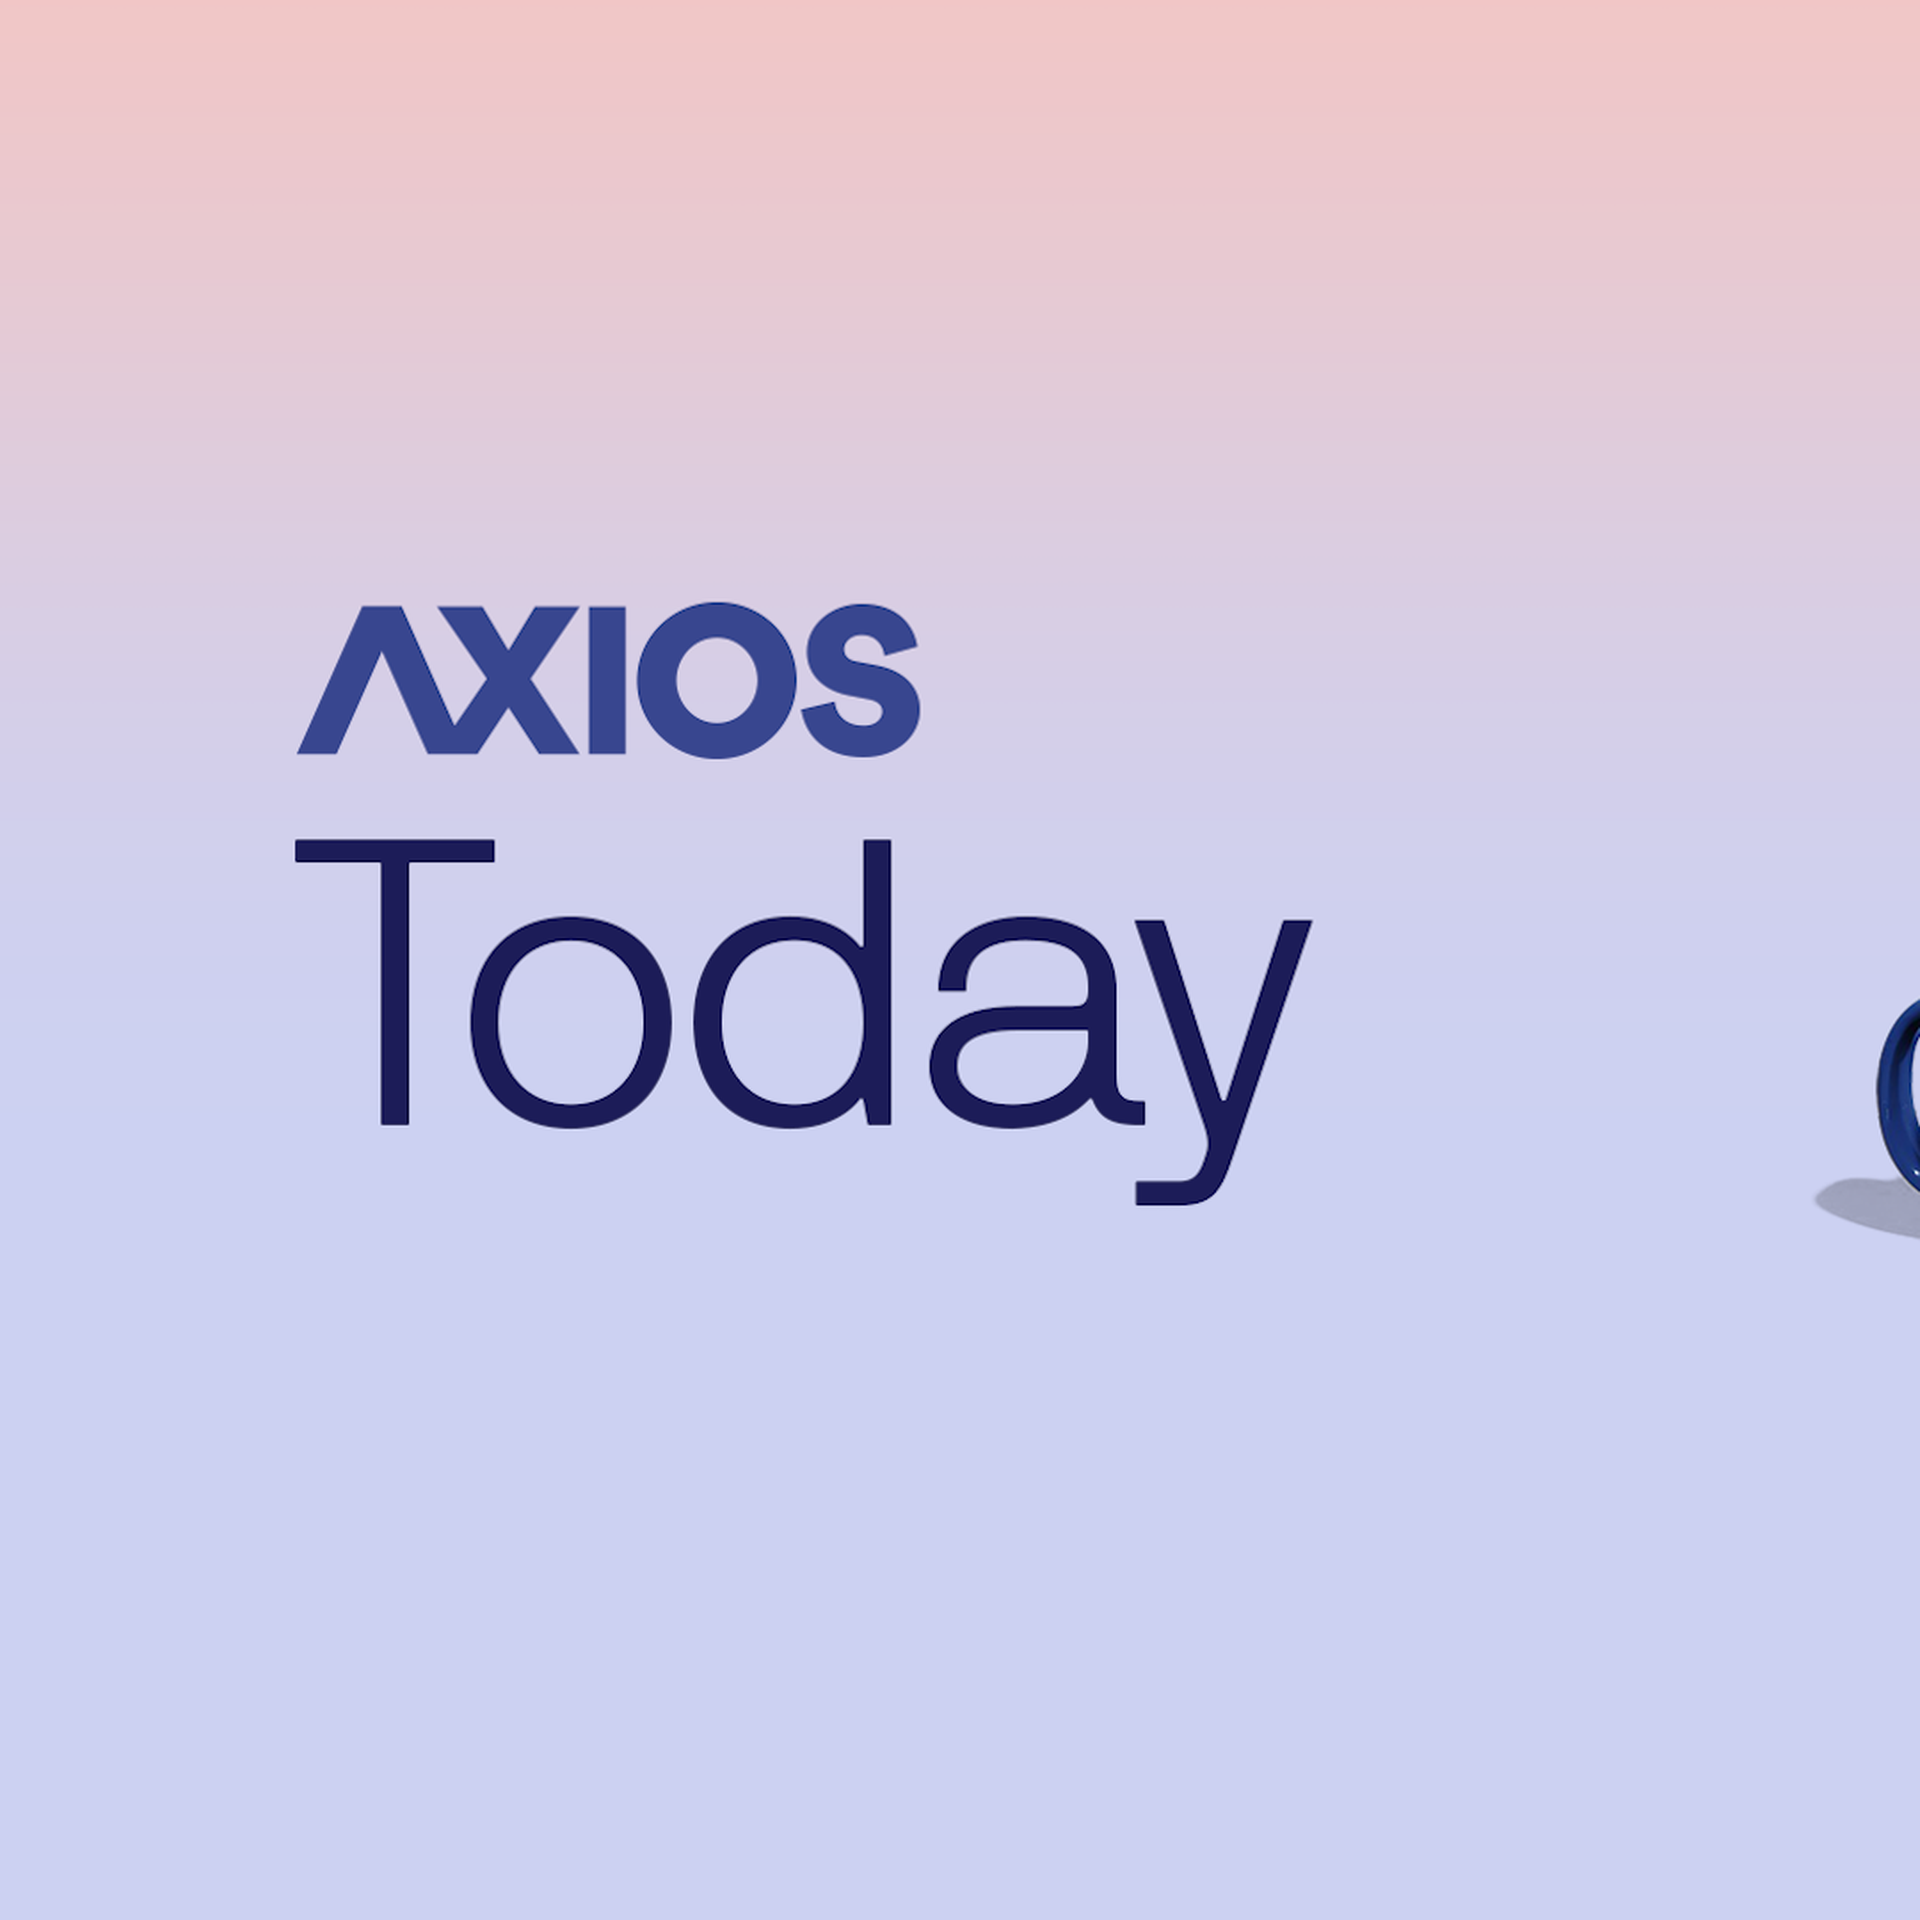 2 mugs and Axios logo